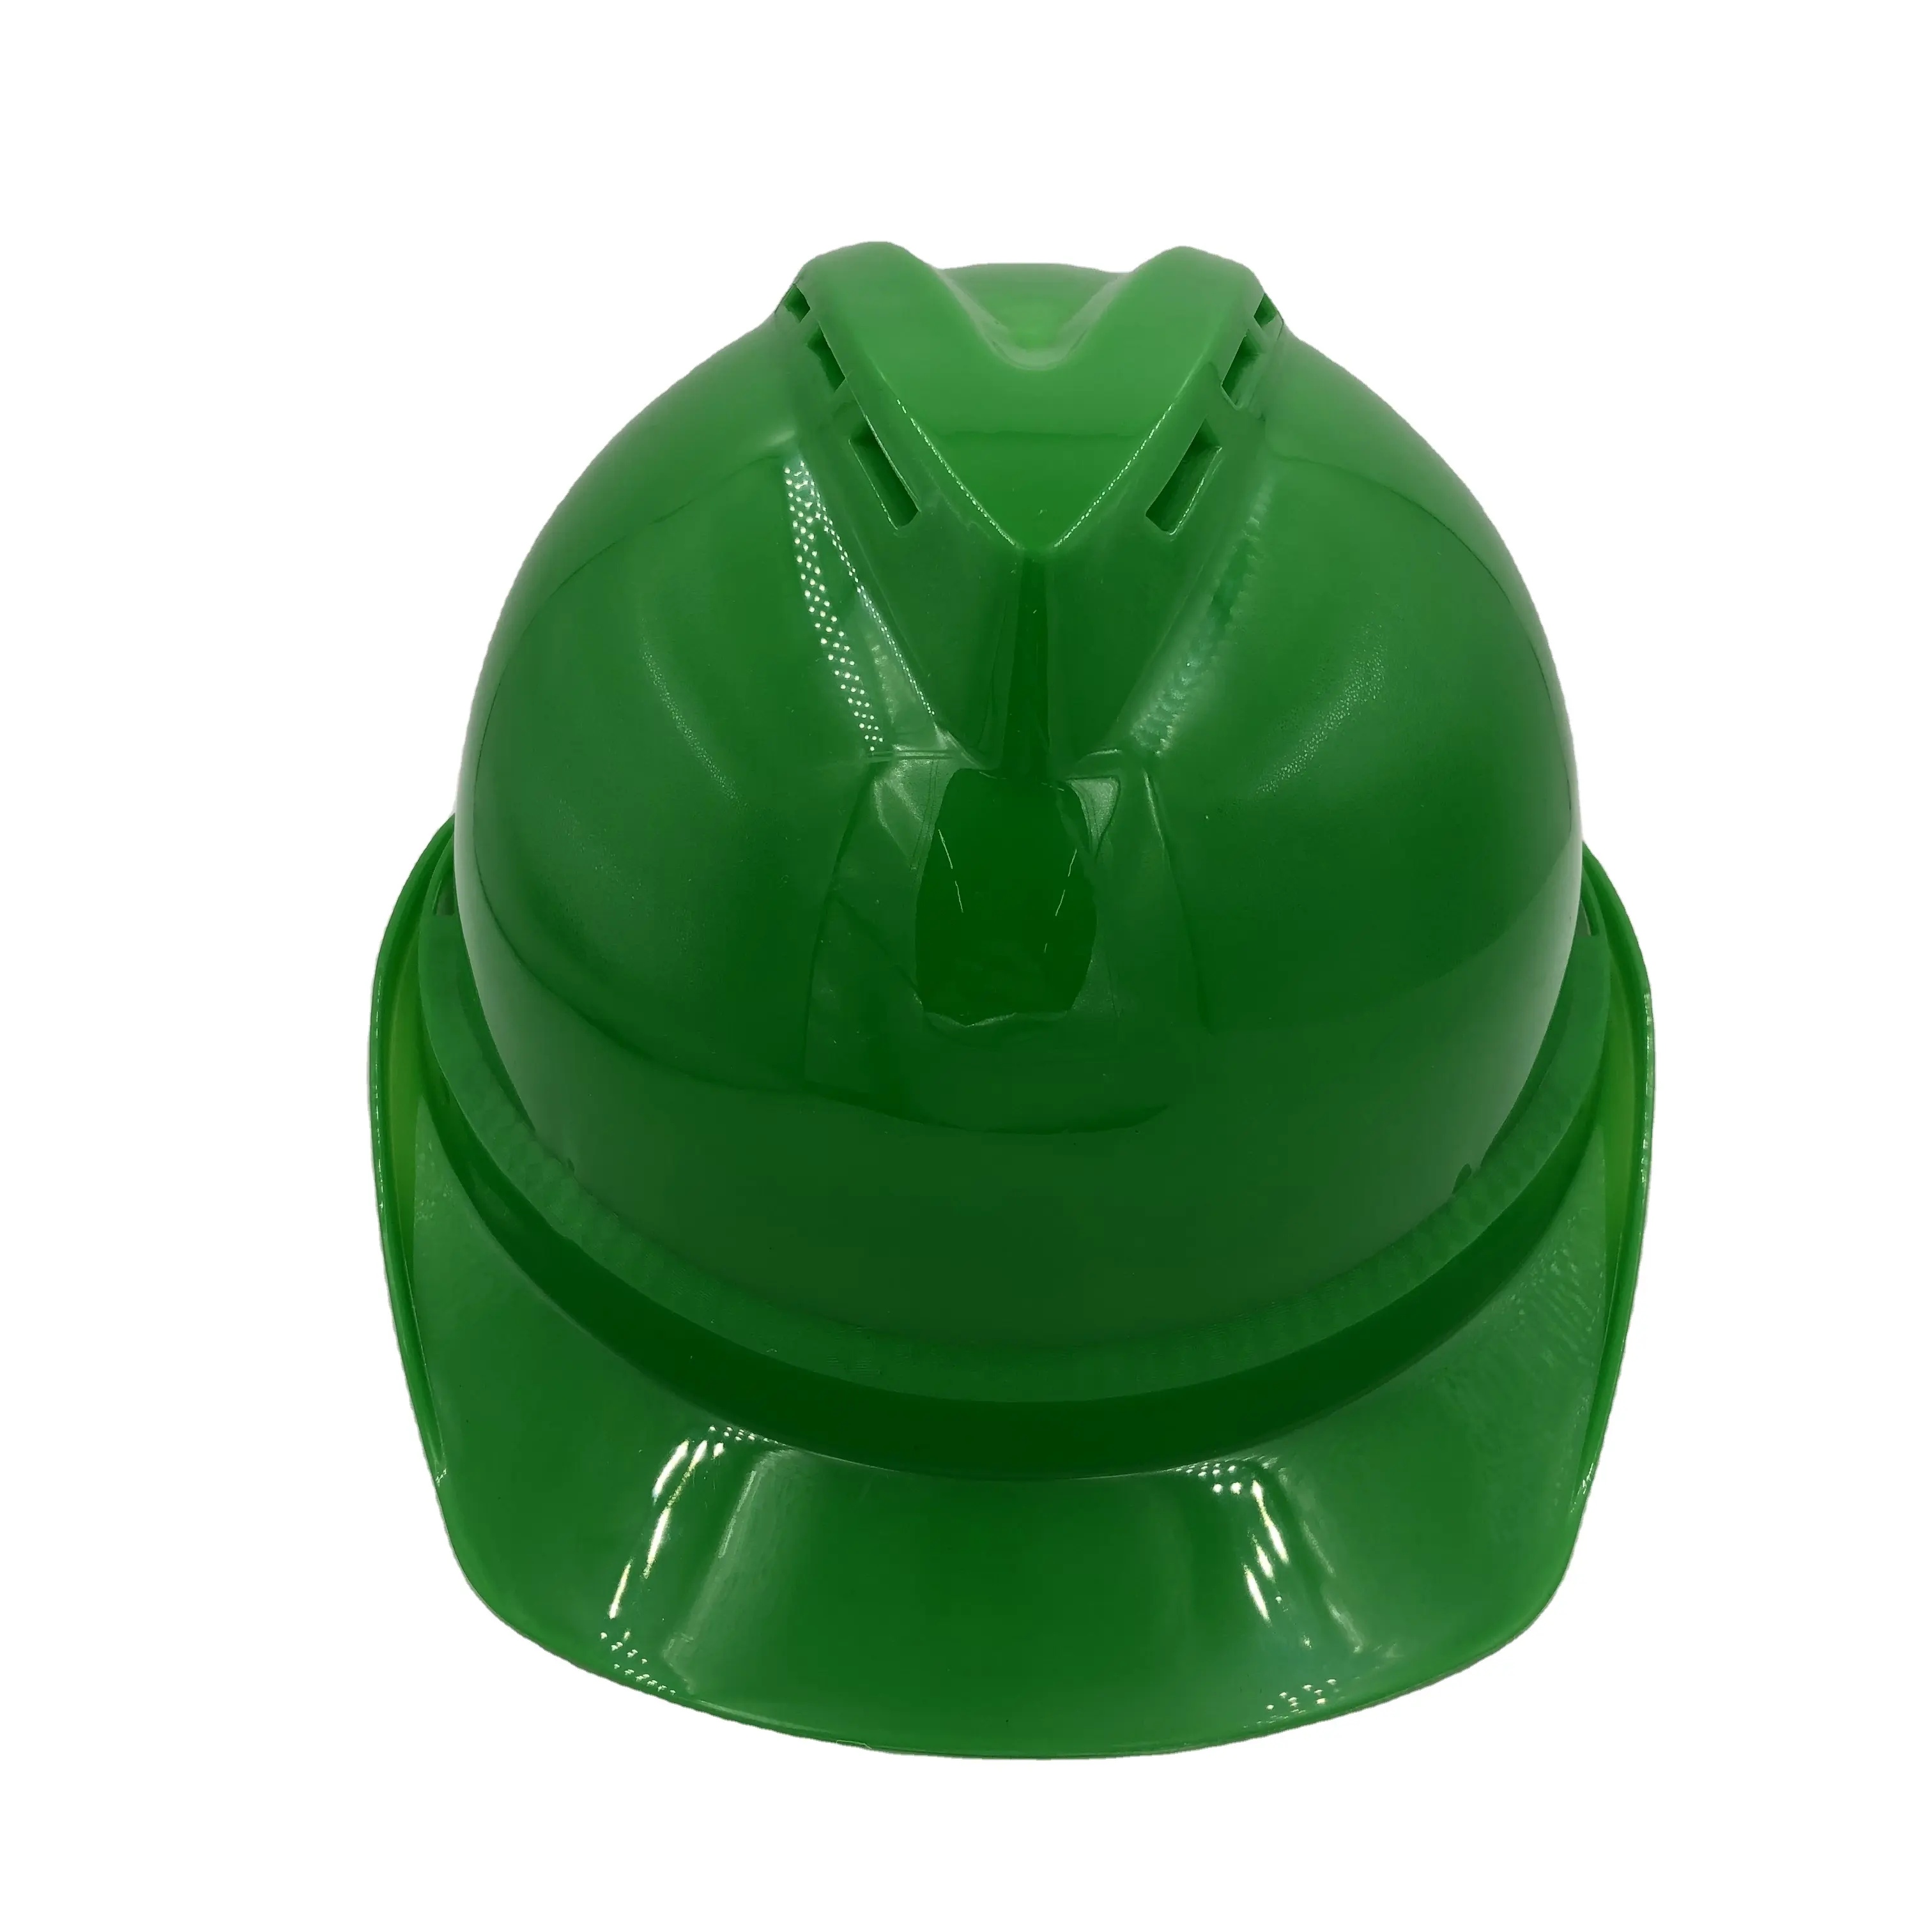 WEIWU Construction de marque Personnalisé couleur verte HDPE matériau ABS type 502 Casquette Casque De Sécurité Industriel